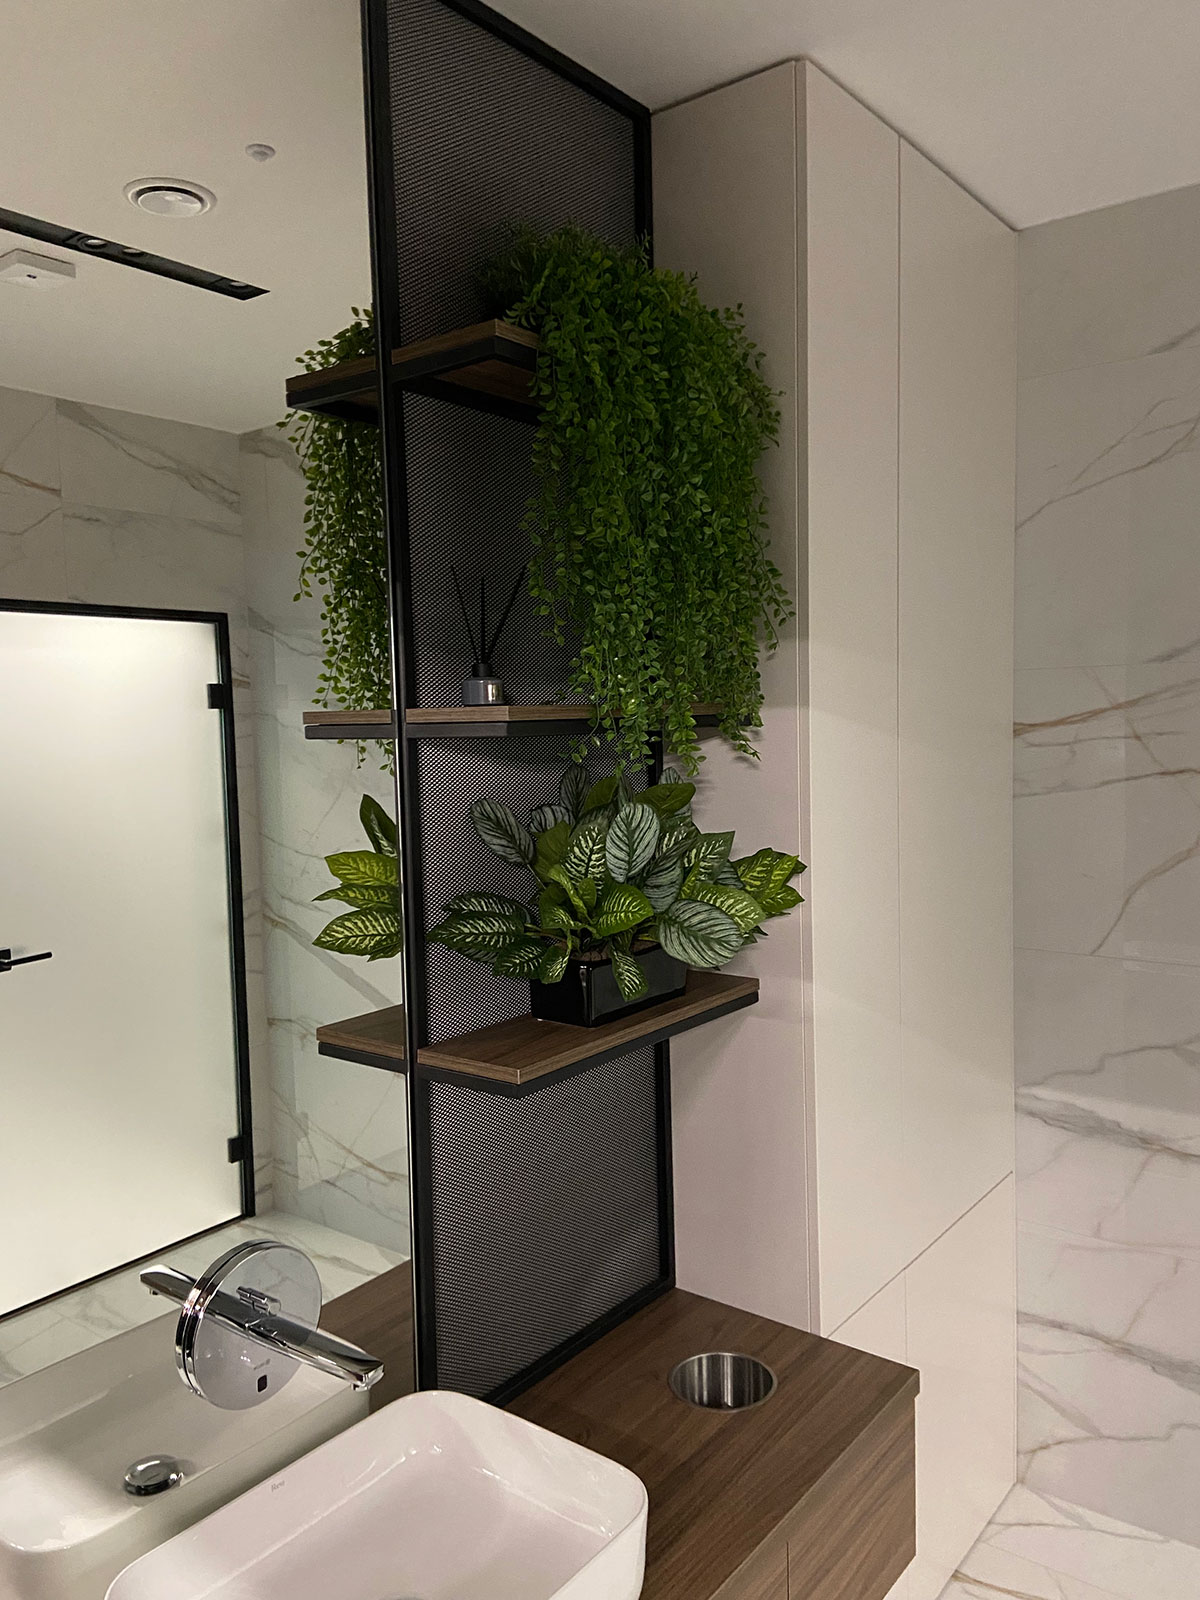 Łazienka z umywalką, lustrem i rośliną.